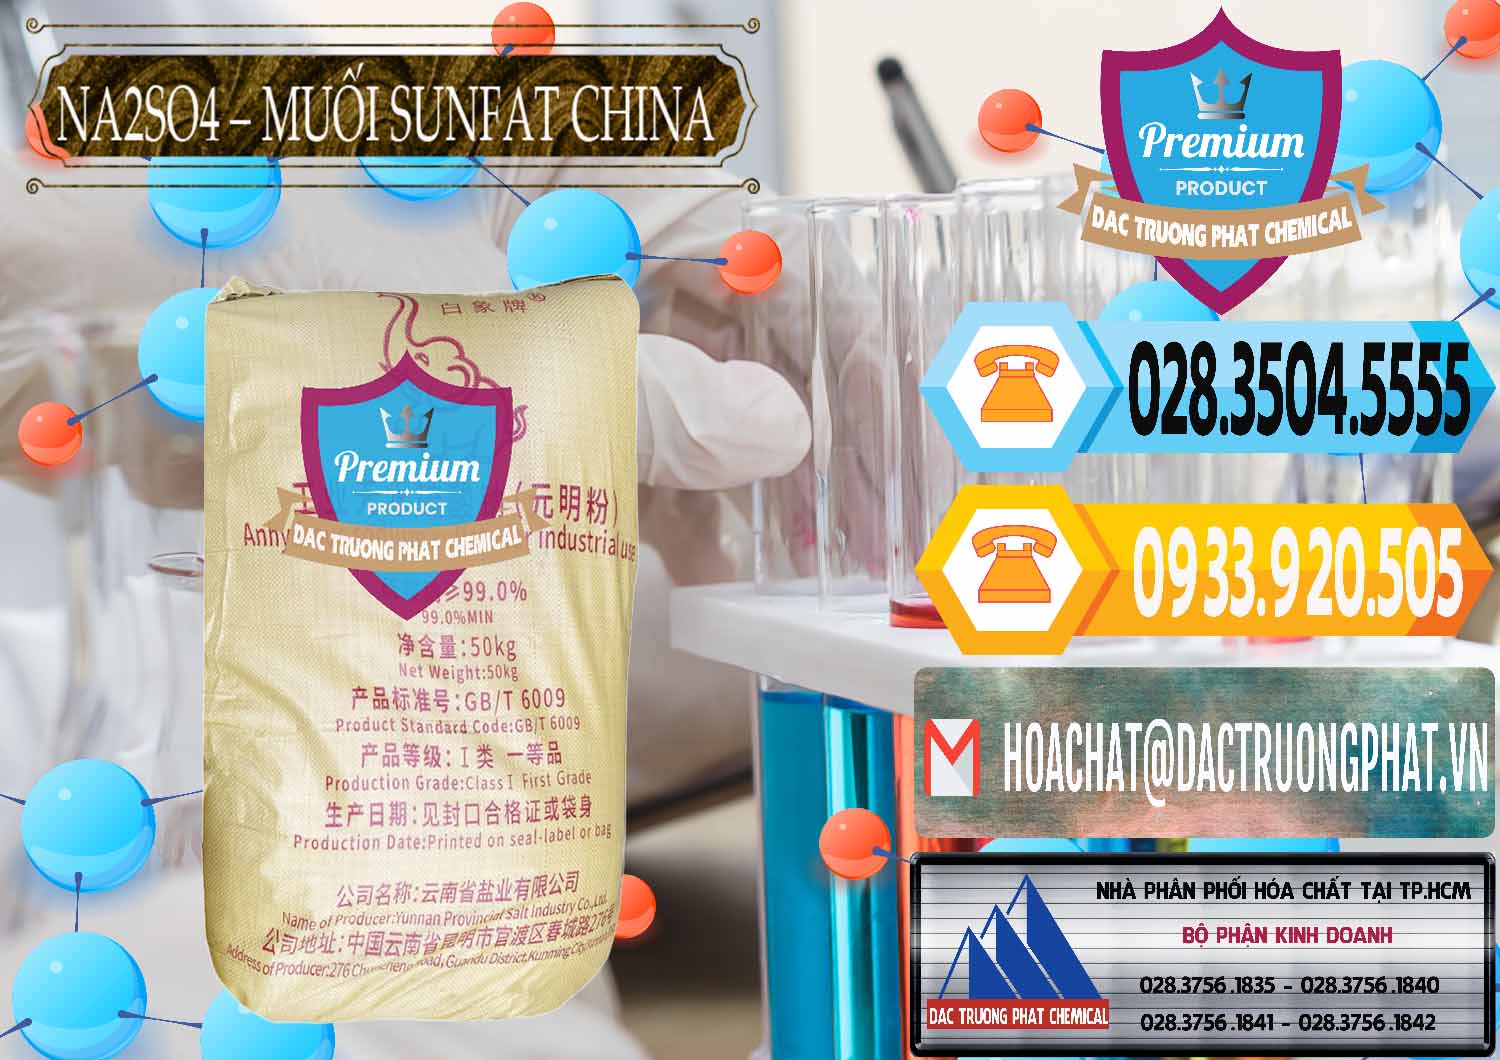 Đơn vị cung ứng và bán Sodium Sulphate - Muối Sunfat Na2SO4 Logo Con Voi Trung Quốc China - 0409 - Đơn vị chuyên kinh doanh ( cung cấp ) hóa chất tại TP.HCM - hoachattayrua.net